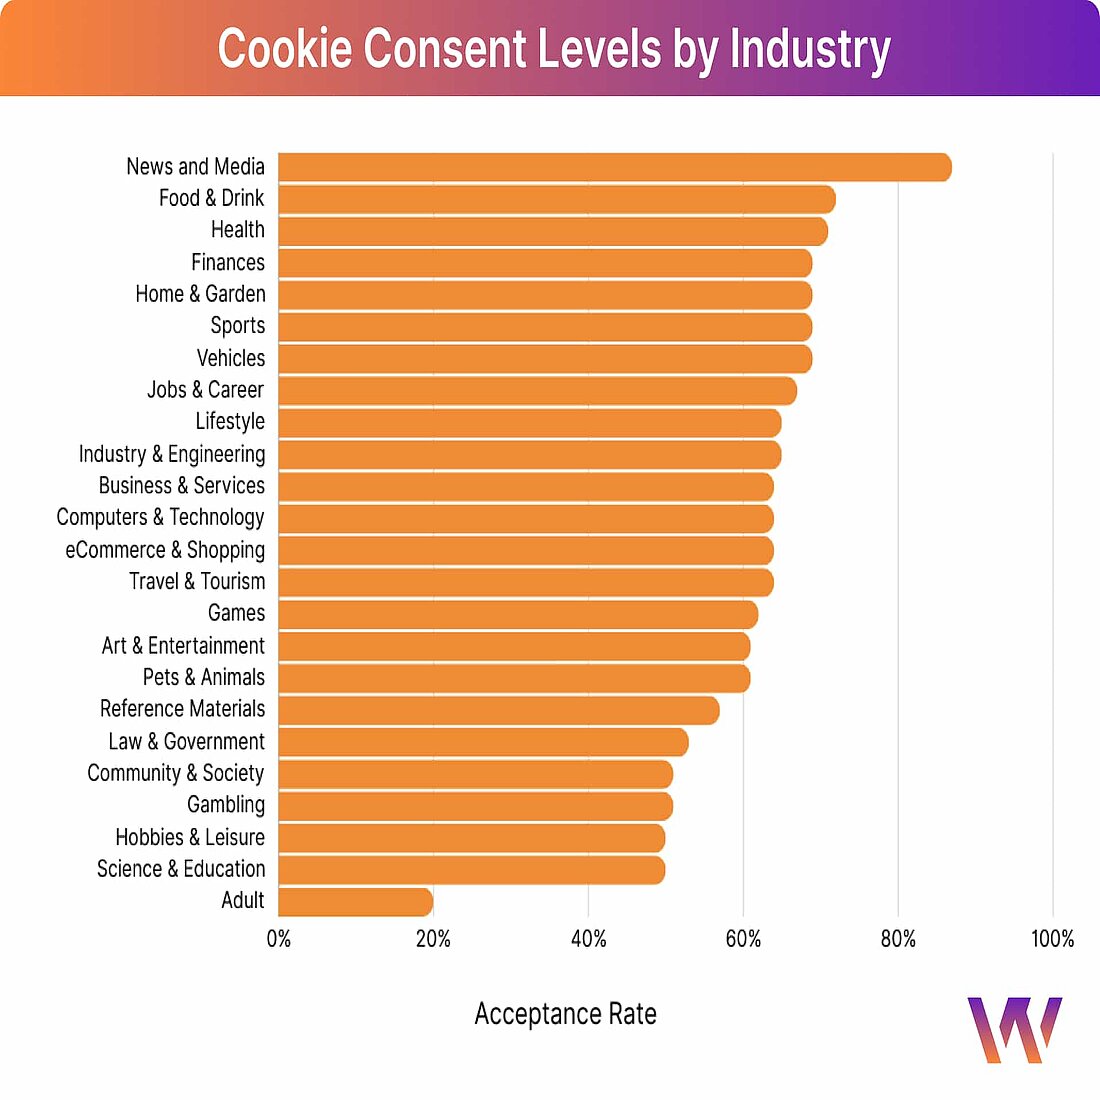 Probleme bei der Verwaltung der Cookie-Zustimmung durch die Industrie